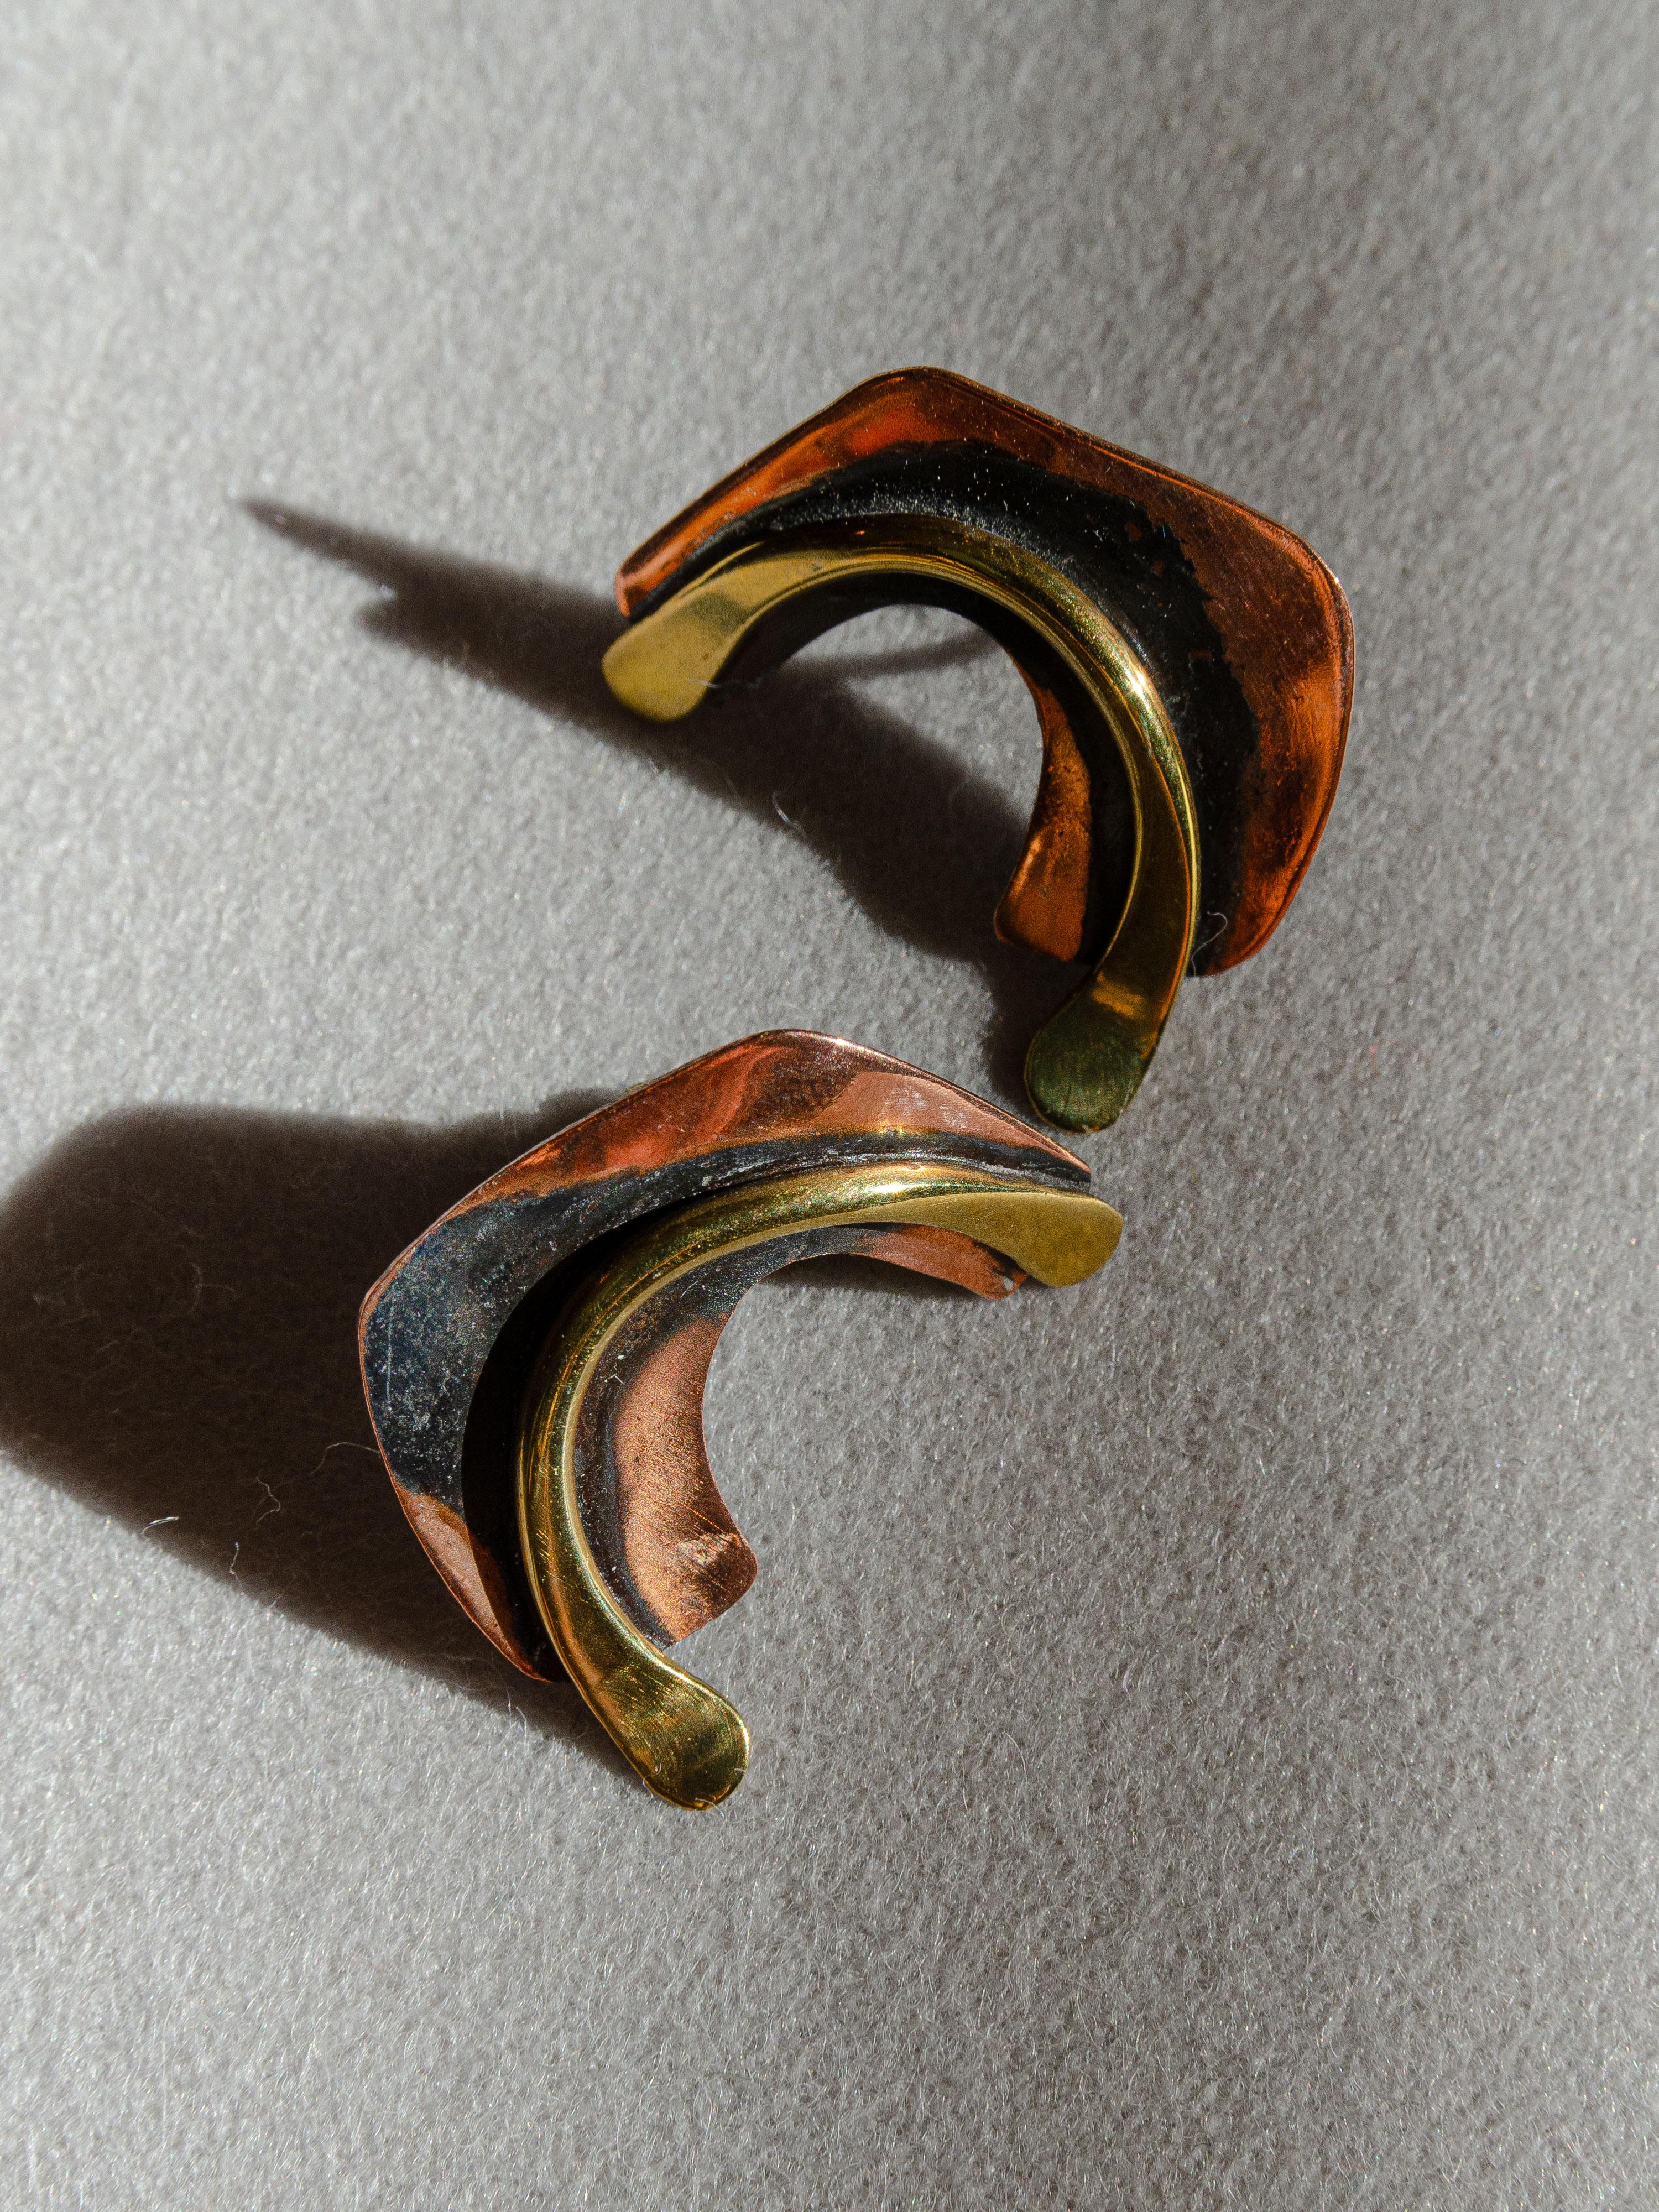 Ein anmutiges Paar biomorphe Ohrringe aus Kupfer und Messing, entworfen vom modernistischen Juwelier Art Smith in den 1950er Jahren in Greenwich Village. Smith gilt als Meister des Juwelierhandwerks während der modernistischen Bewegung in der Mitte